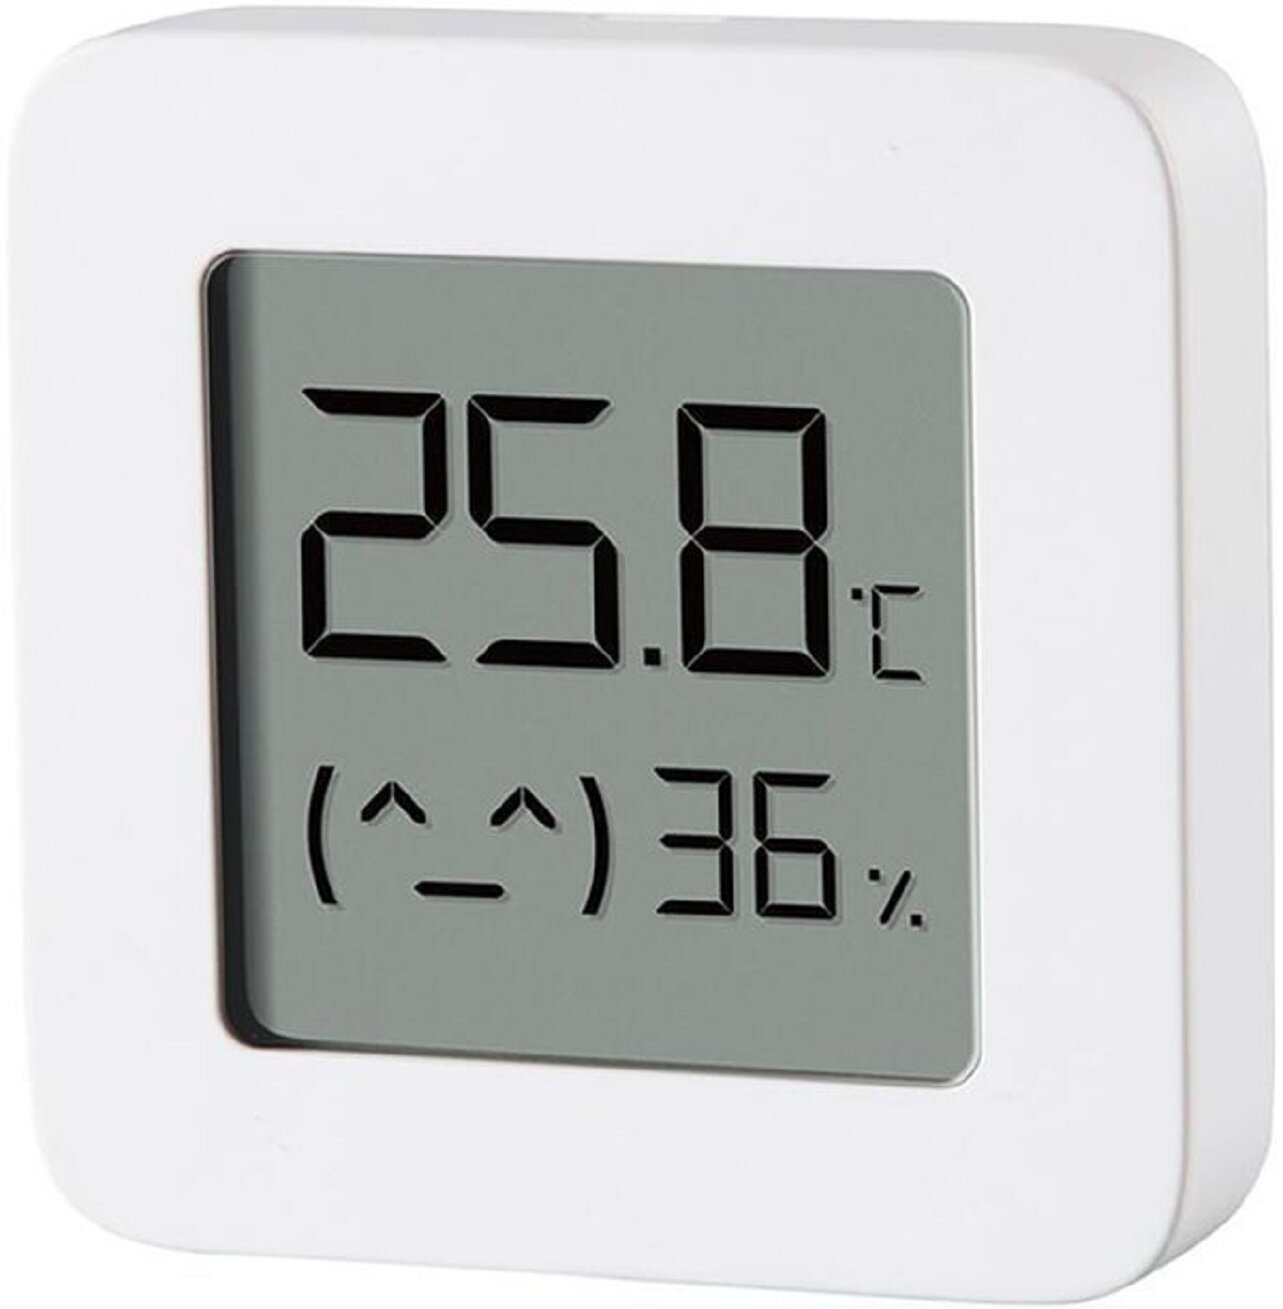 Фирменный электронный датчик Temperature and Humidity Monitor 2 для точного определения температуры и влажности всегда подскажет вам и системе "умный